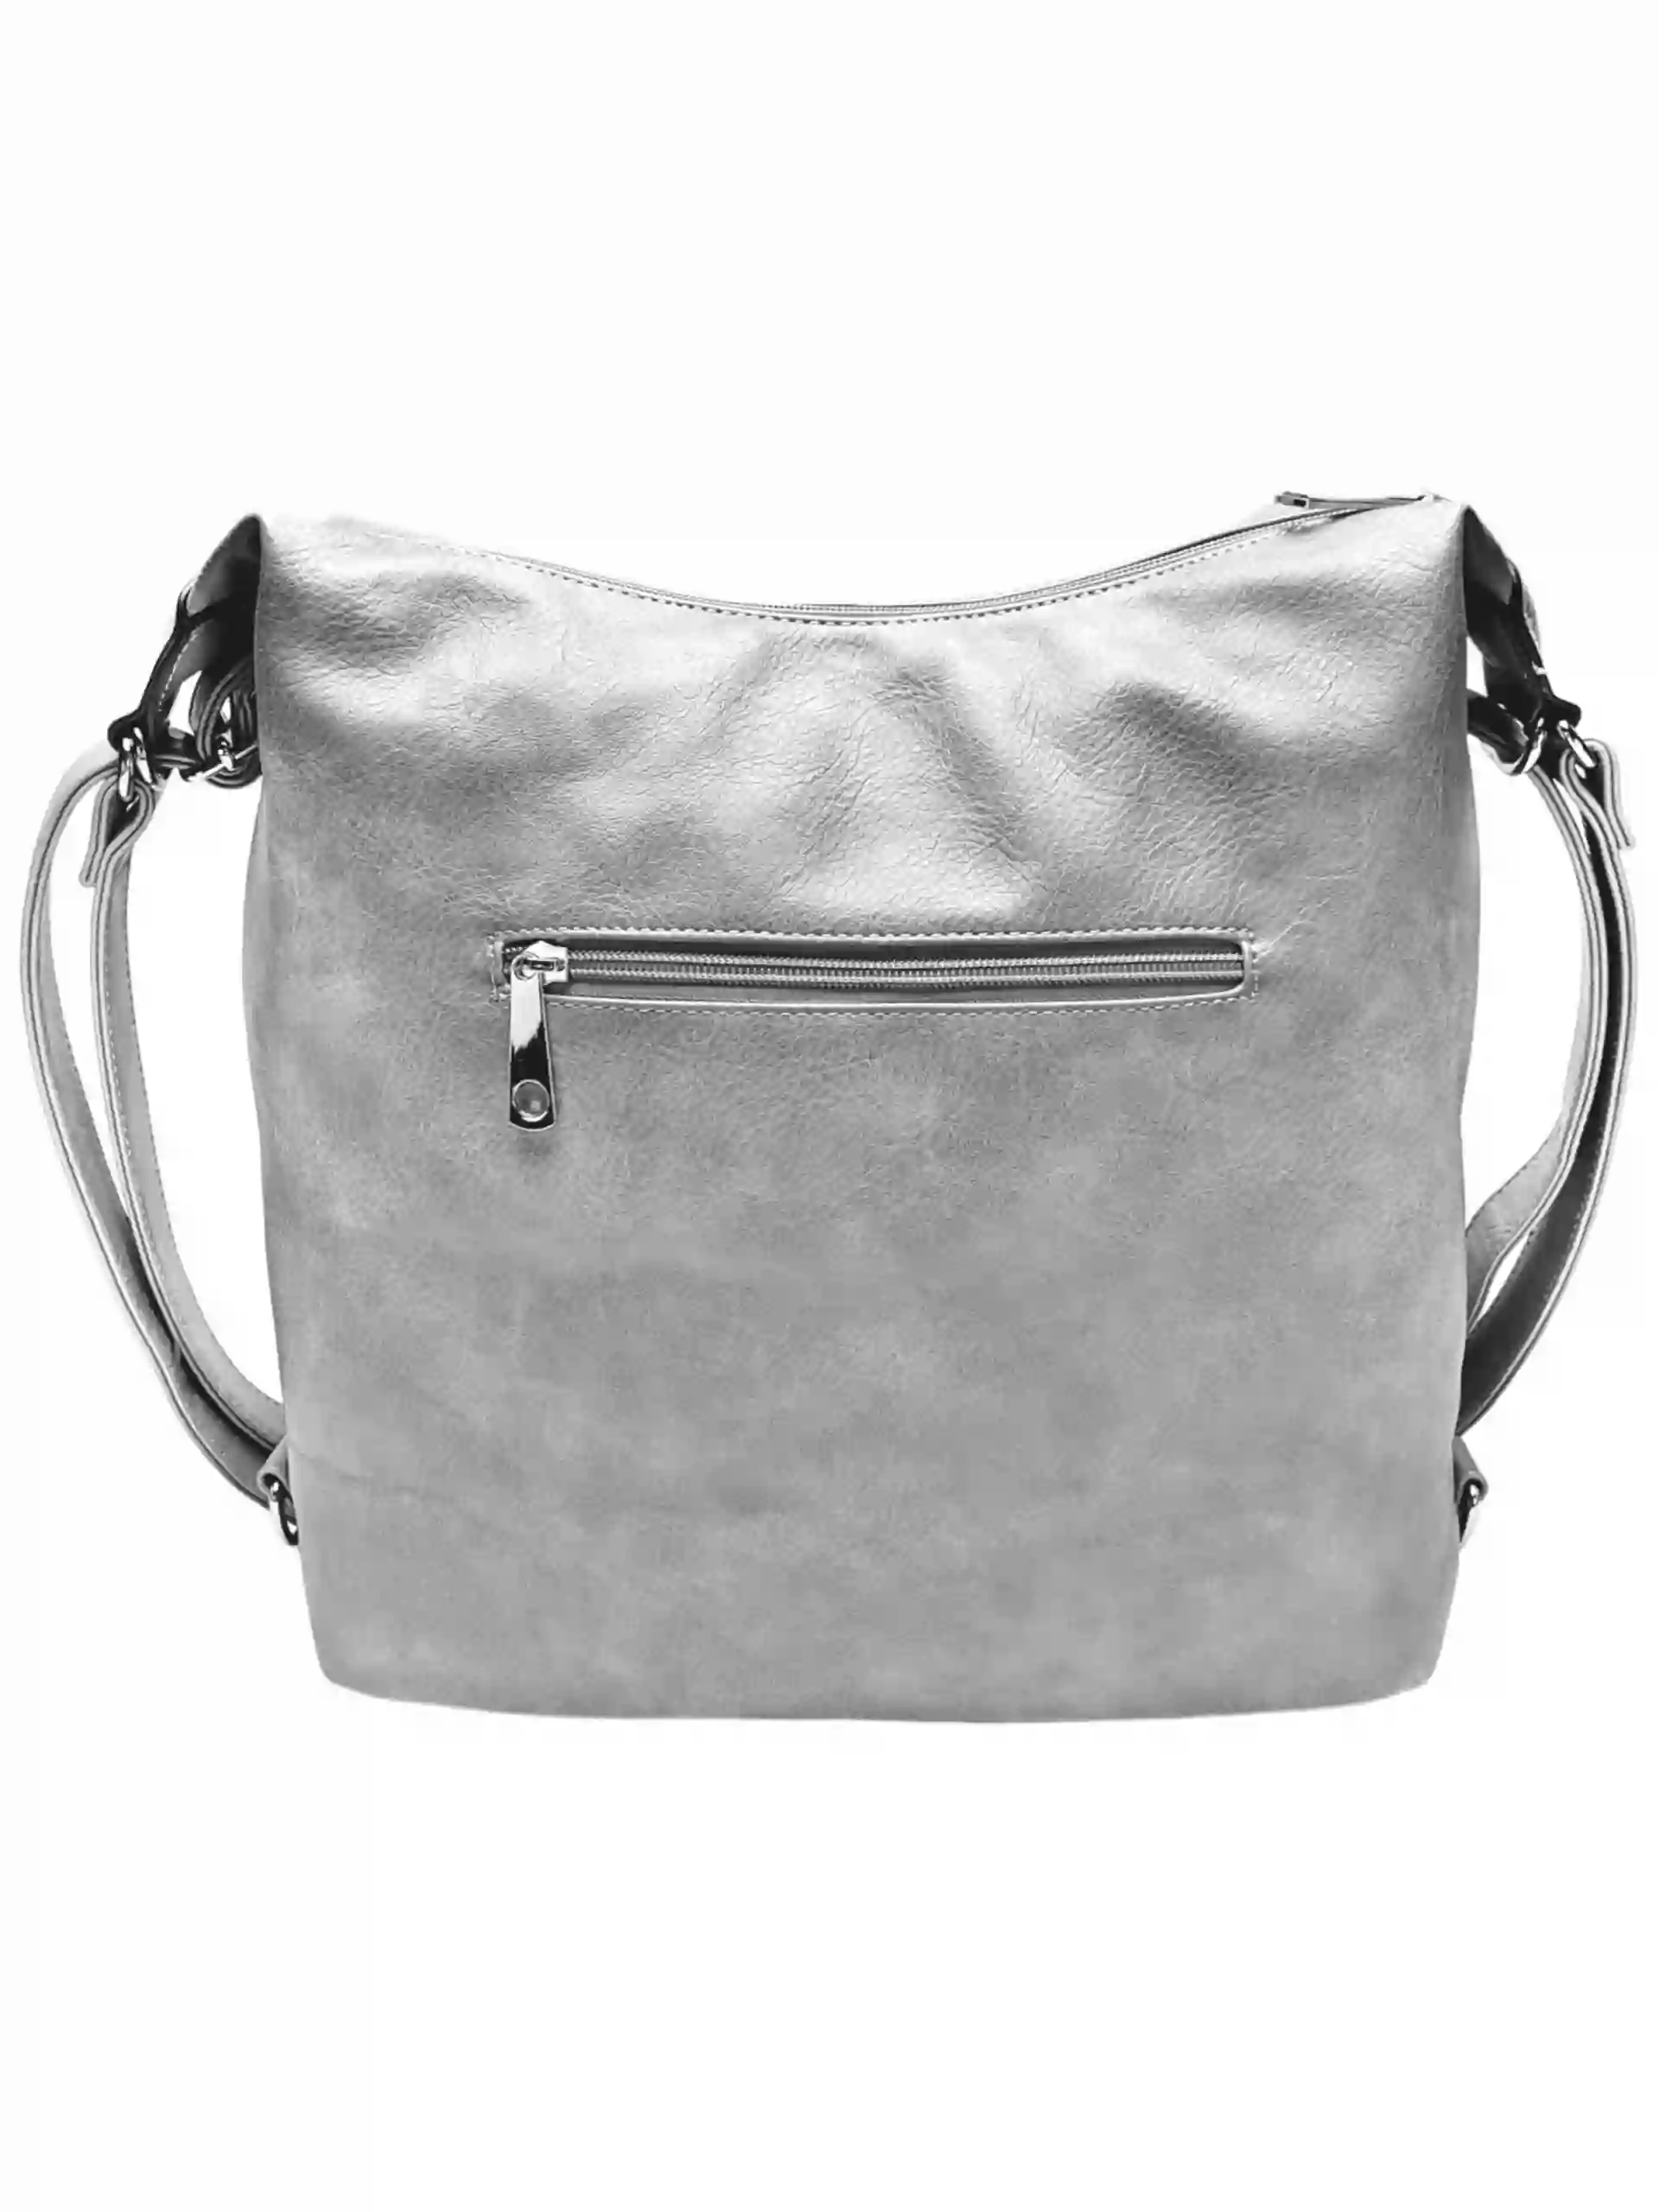 Velký světle šedý kabelko-batoh 2v1 s praktickou kapsou, Tapple, H190010N+, zadní strana kabelko-batohu 2v1